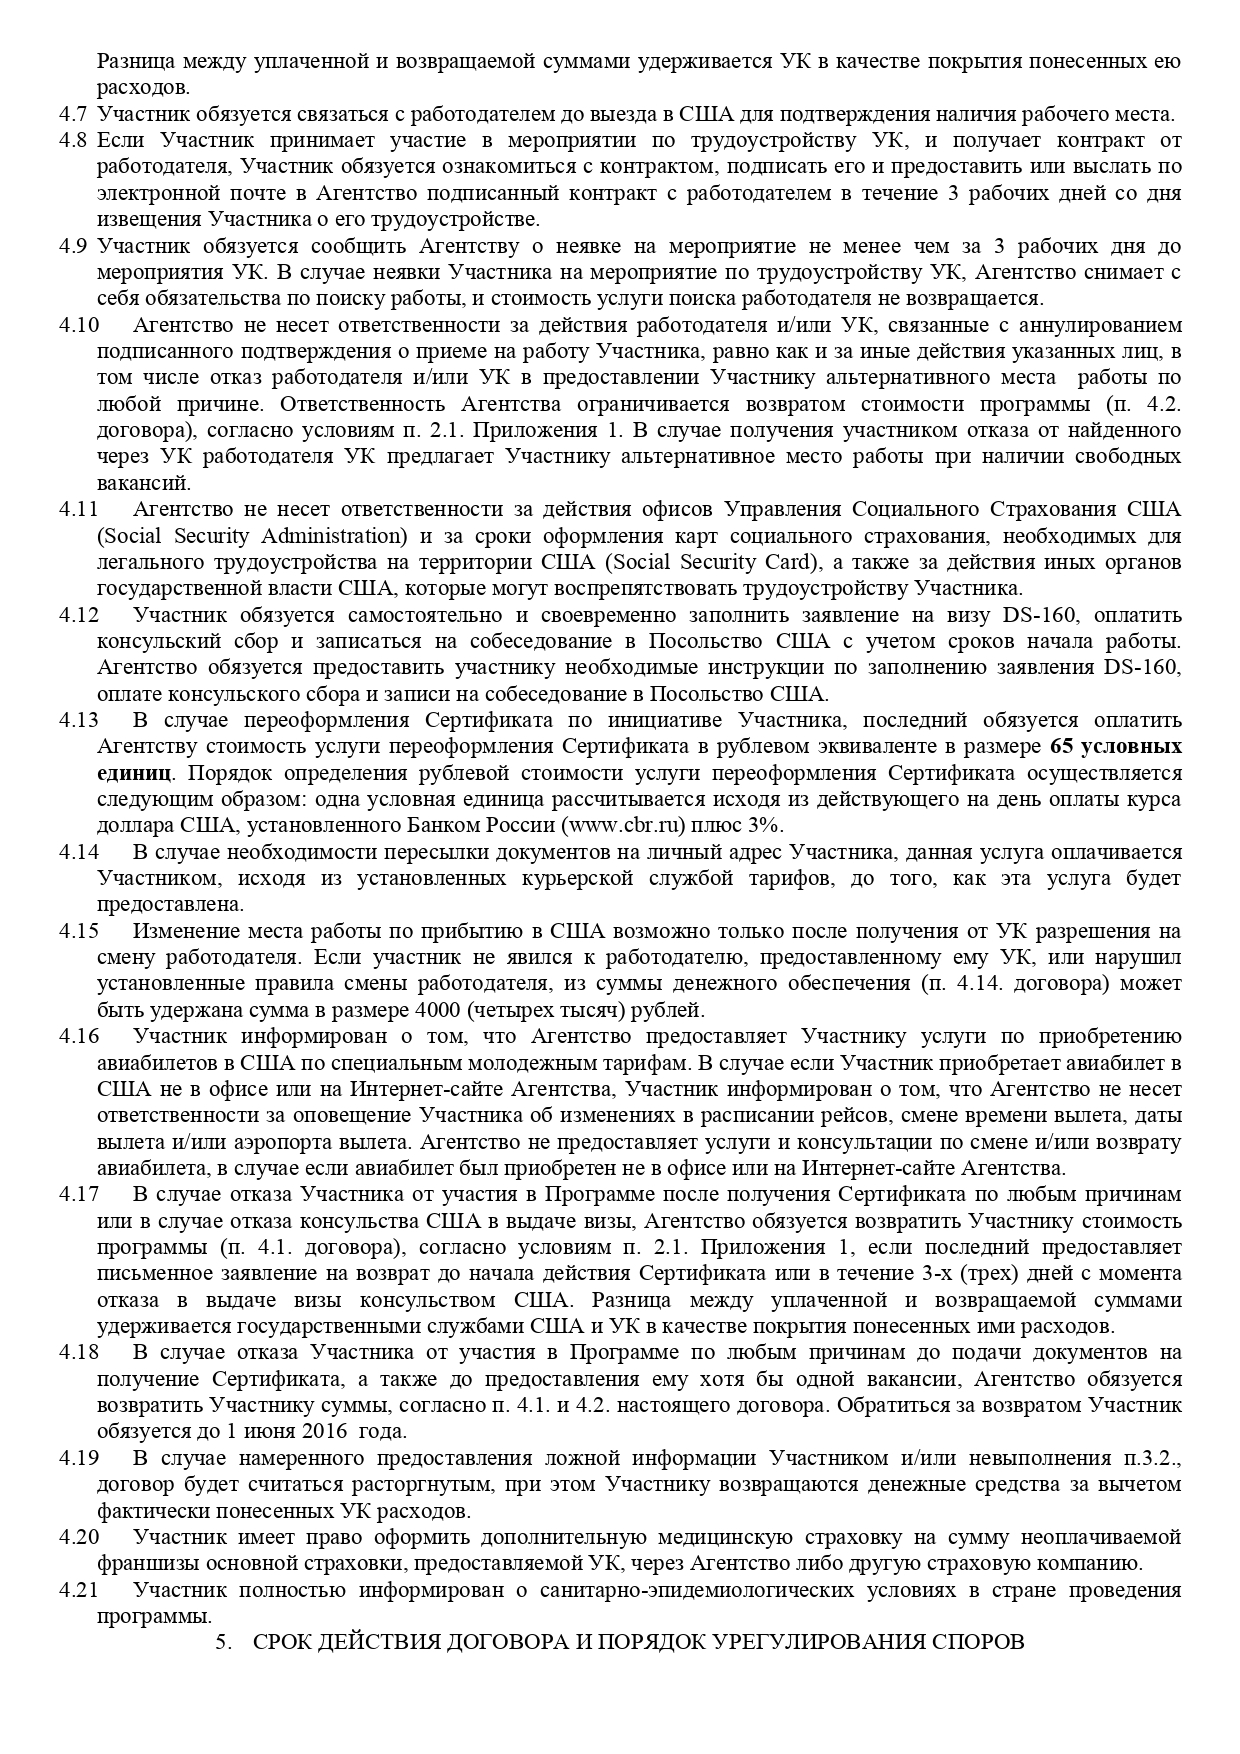 Мой договор на программу «Ворк-энд-тревел» перед поездкой в Буллфрог. Стоимость программы по нему — 1200 $